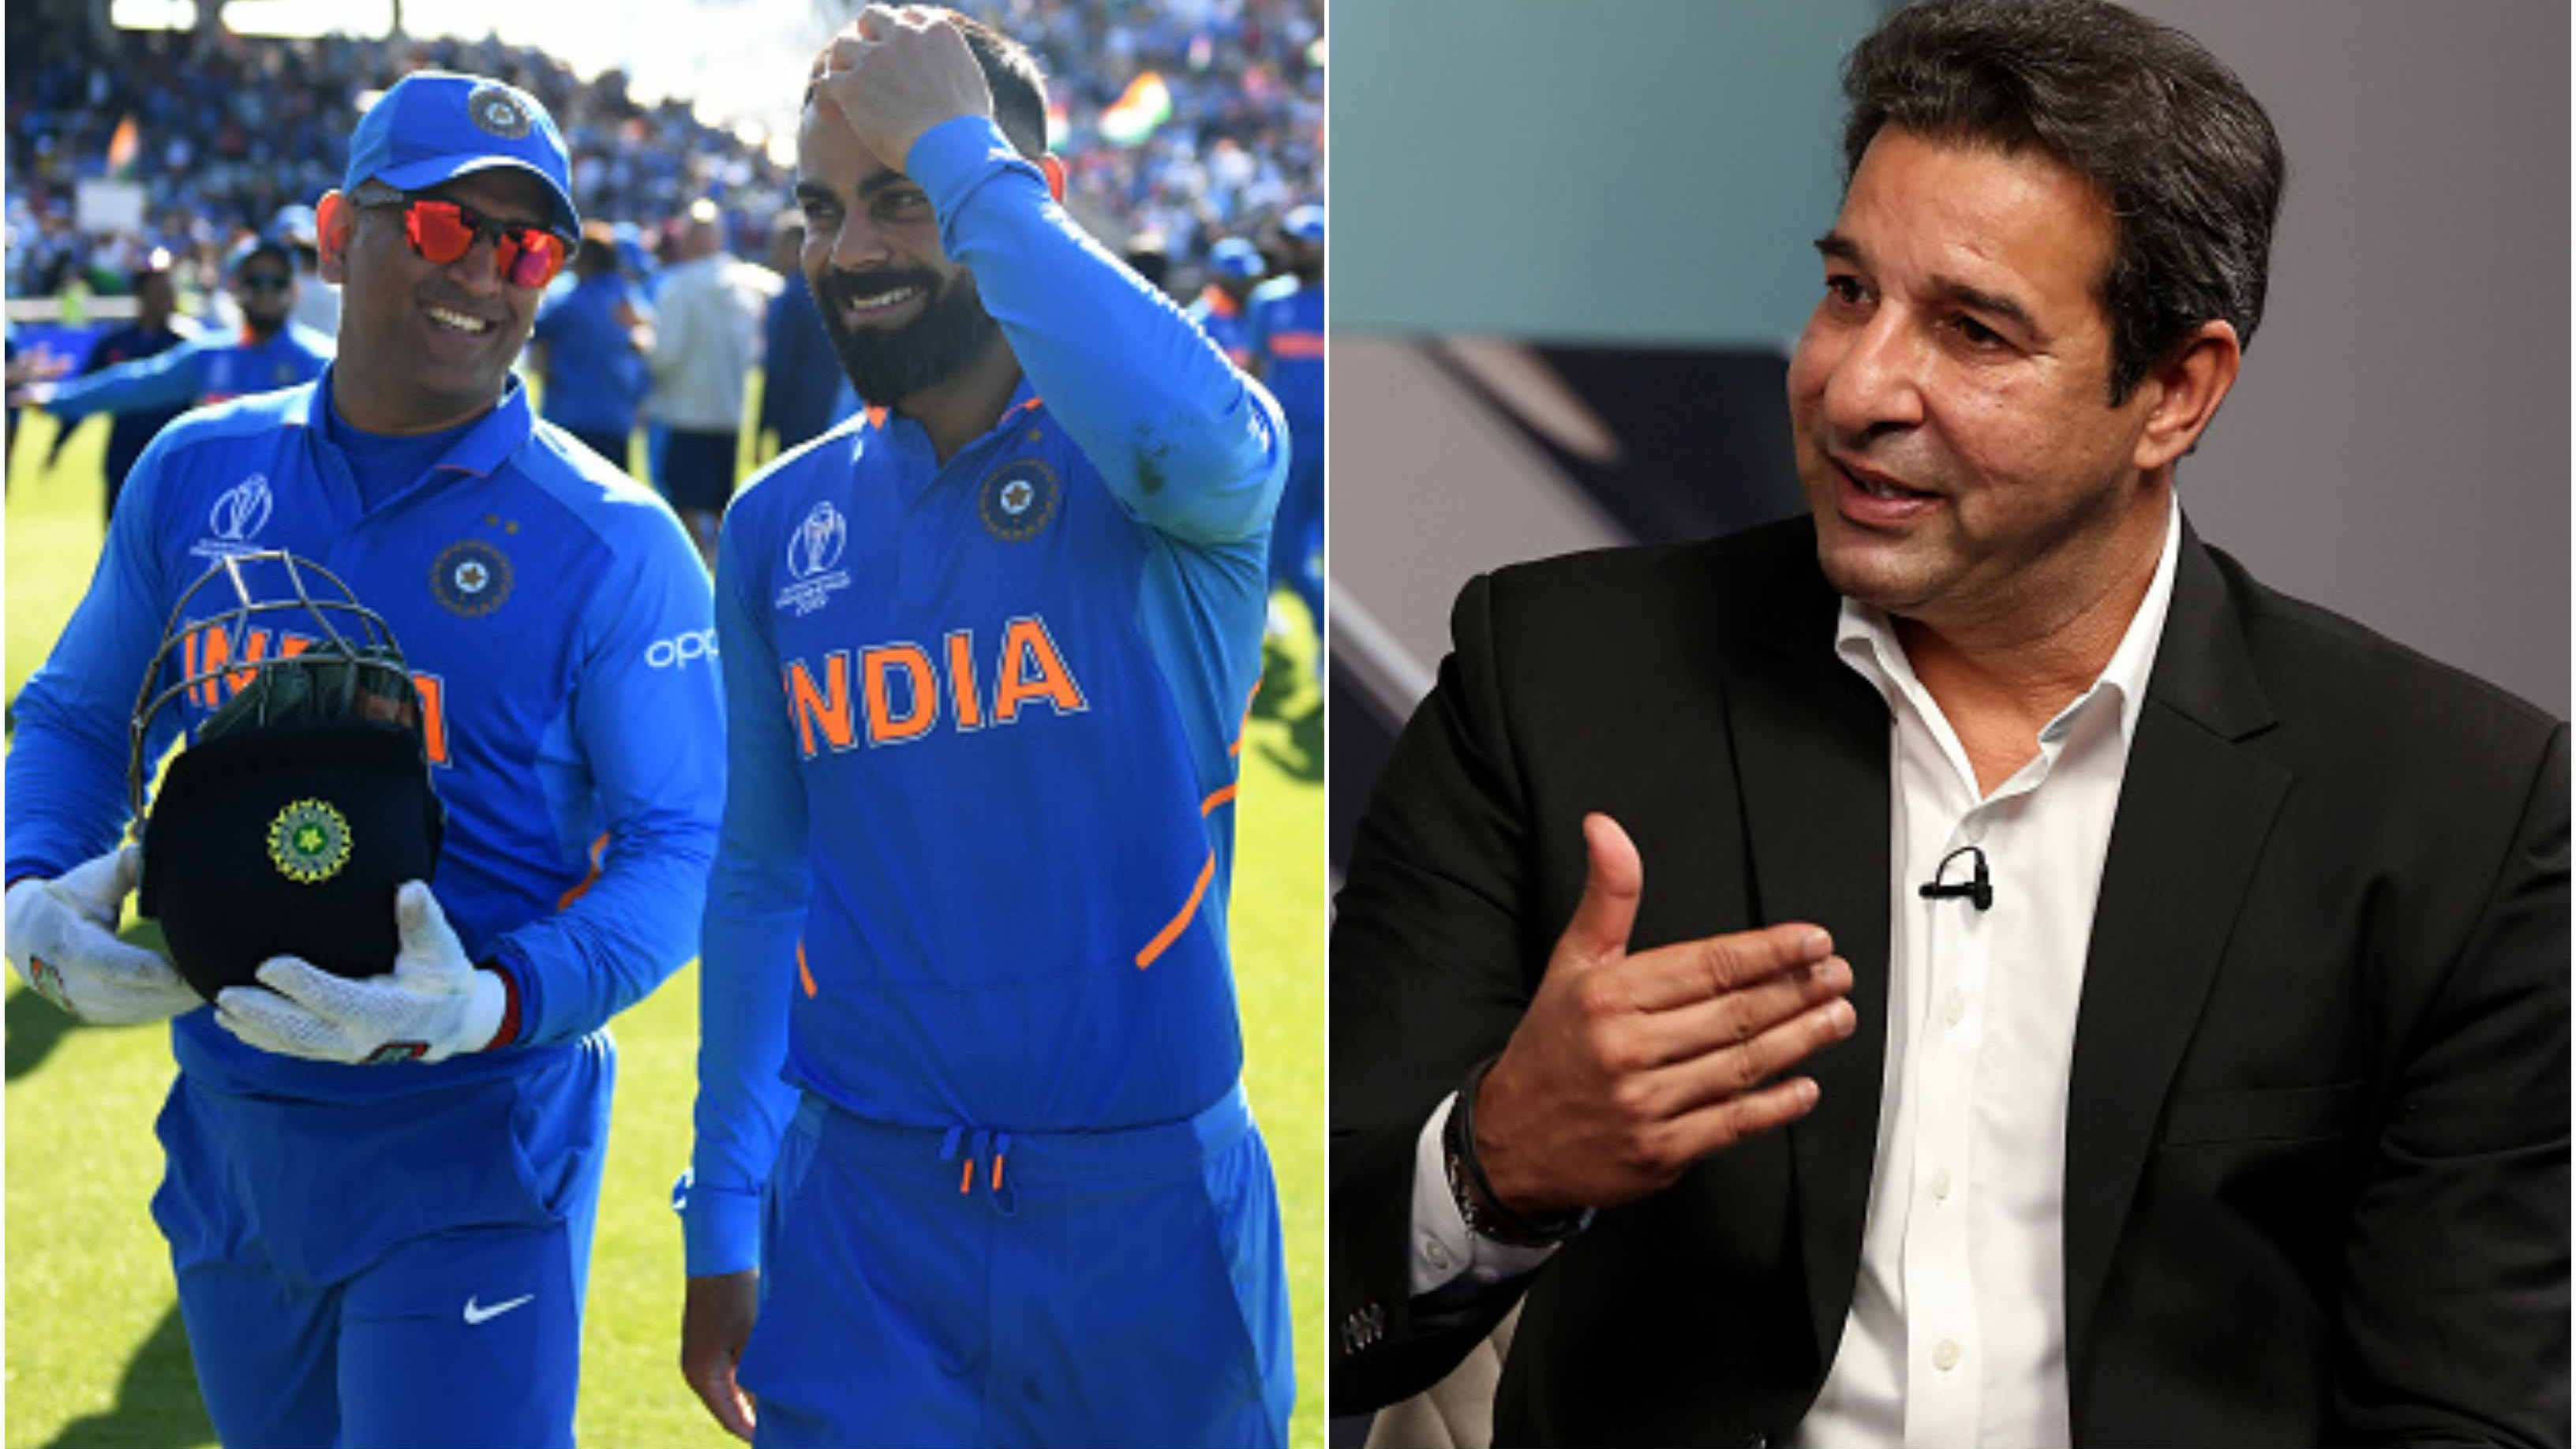 WATCH: Kohli, Dhoni among 6 Indians feature in Wasim Akram's combined India-Pakistan ODI XI